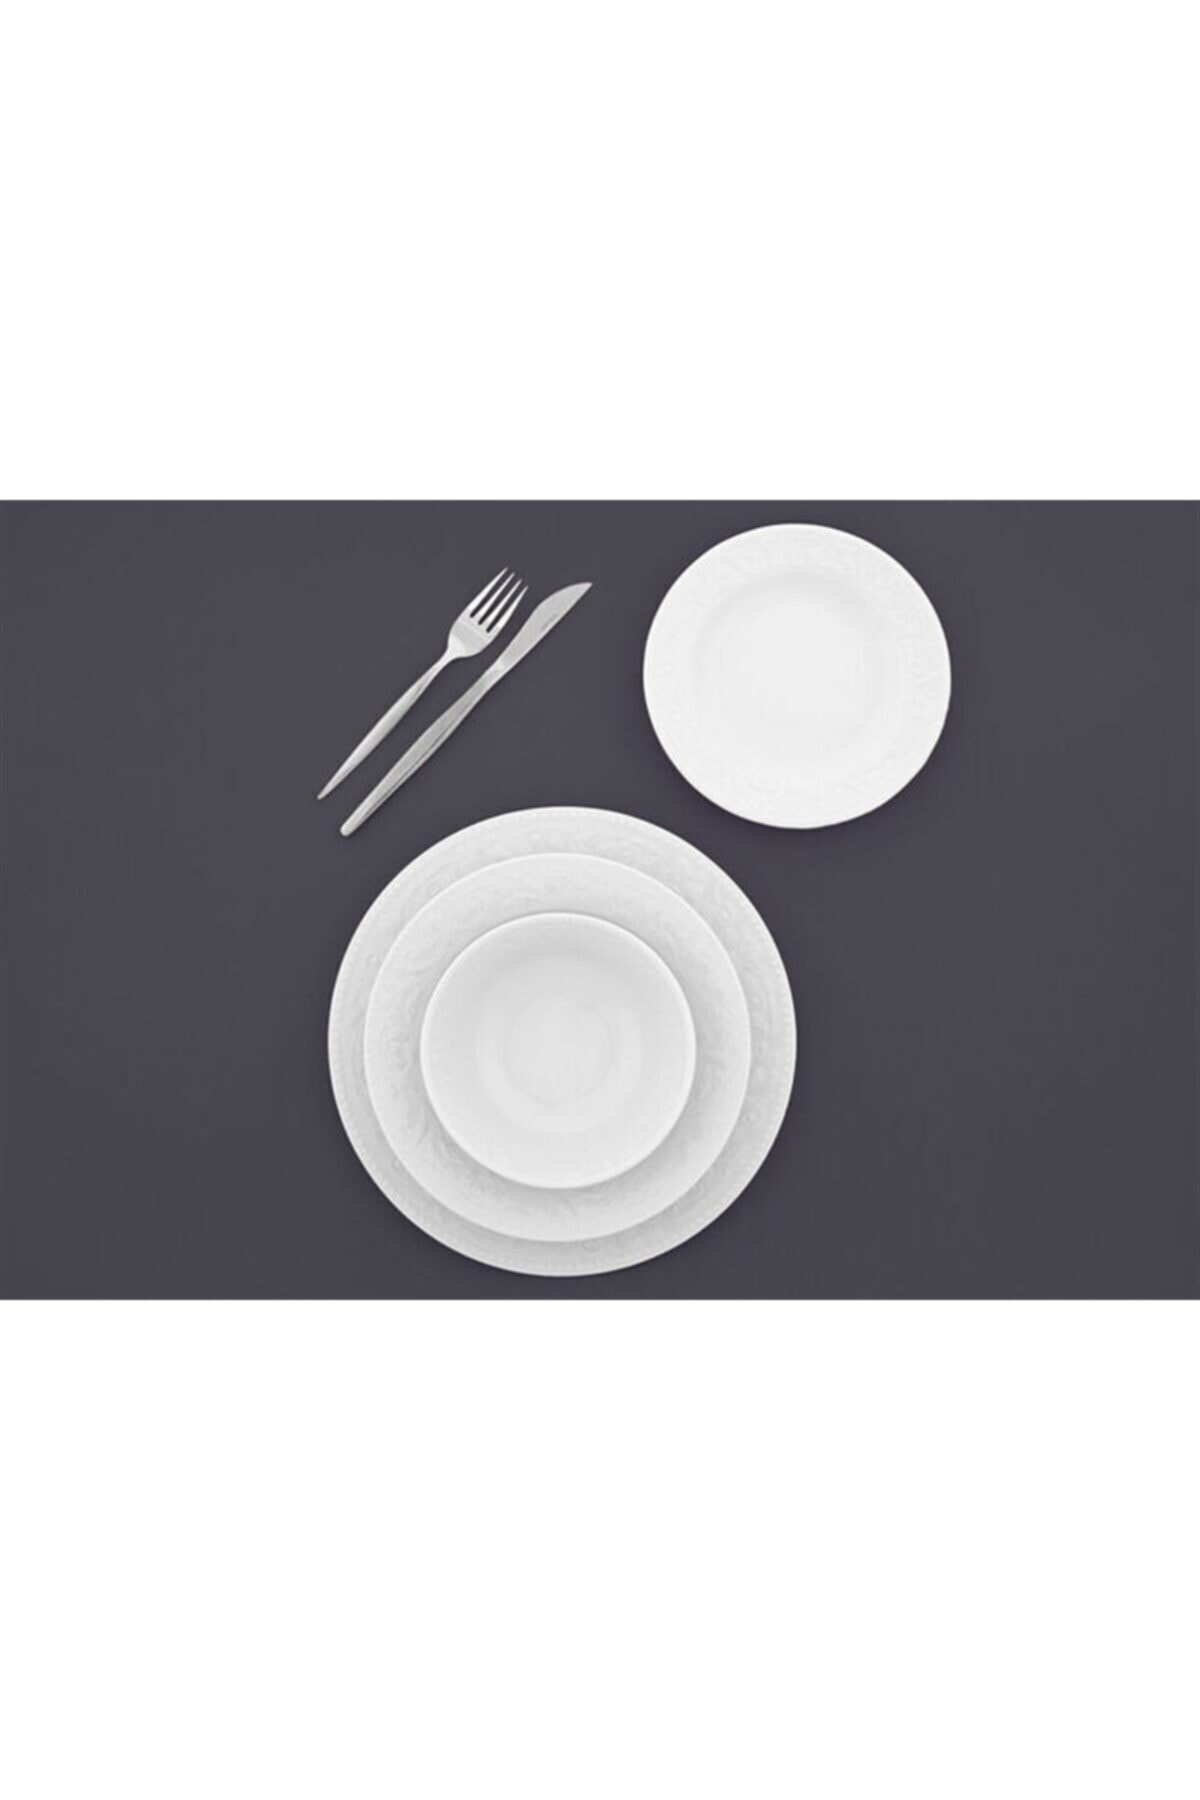 Porland Hazan Beyaz Yeni Yemek Takımı 24 Parça